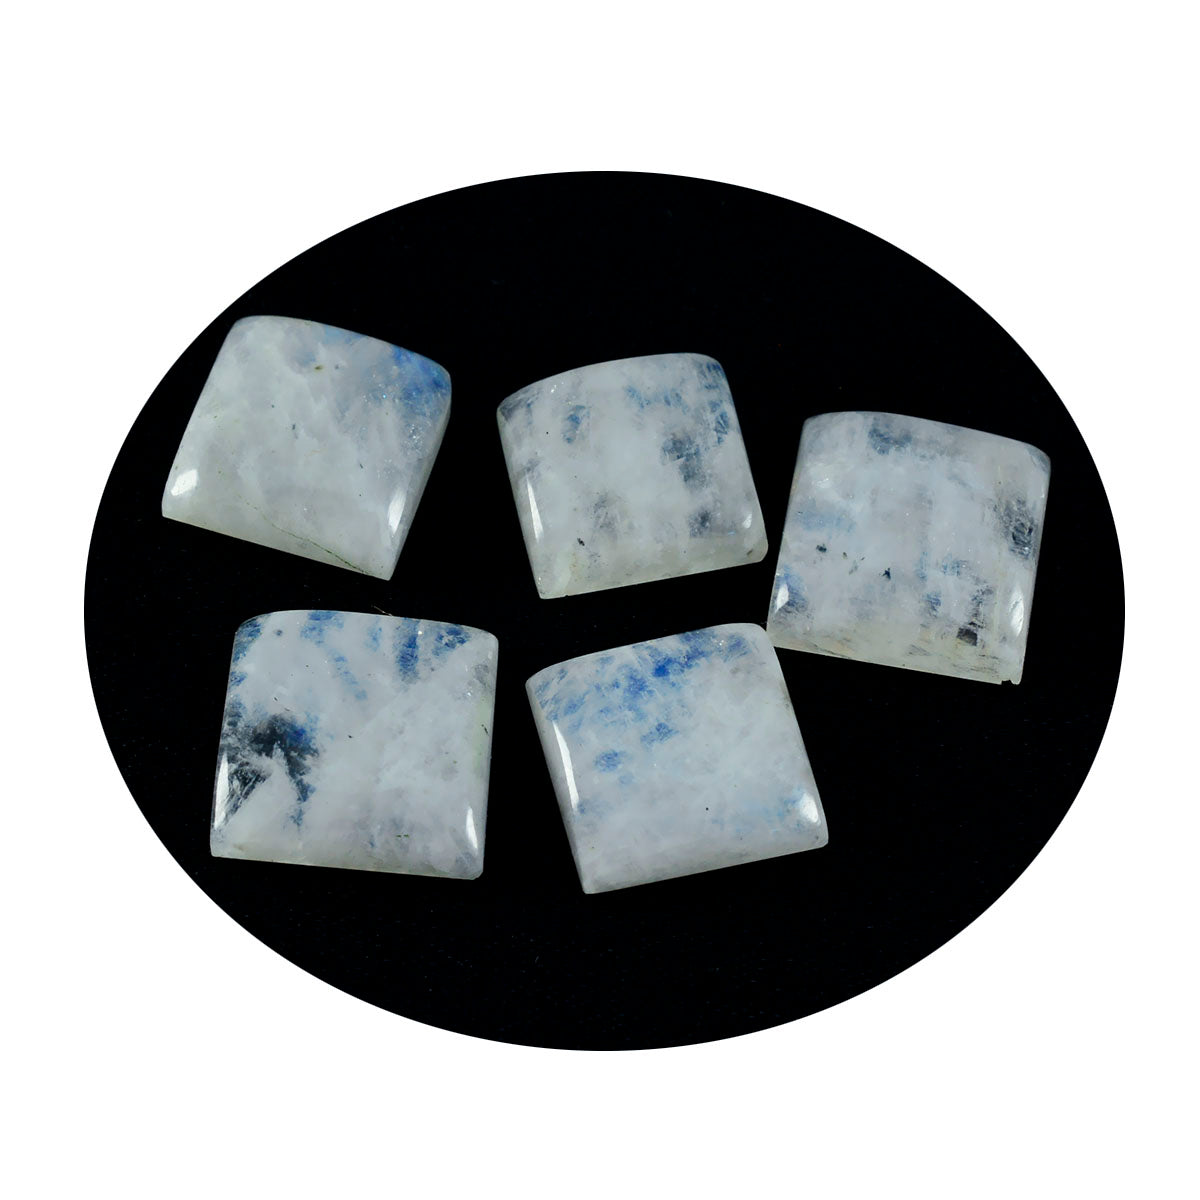 riyogems 1 шт. белый радужный лунный камень кабошон 14x14 мм квадратной формы милые качественные свободные драгоценные камни